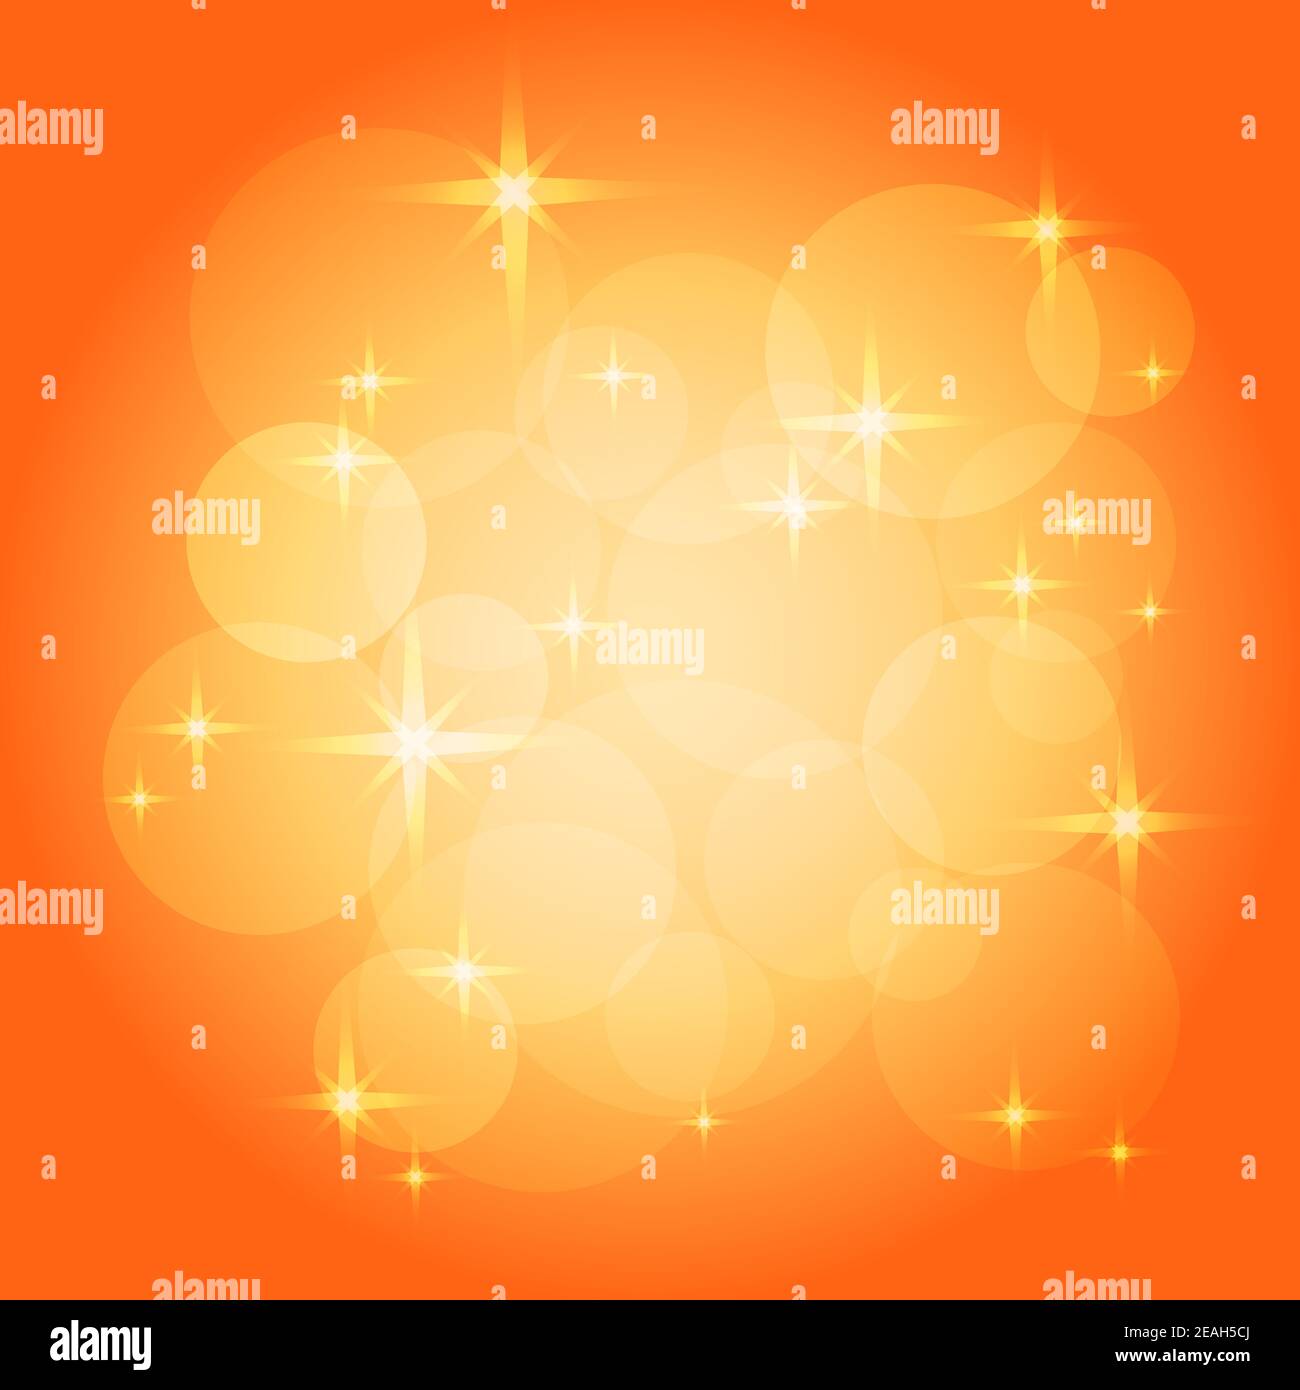 Fond orange ensoleillé. Motif vectoriel de bokeh, de sparkles et d'étoiles. Dégradé de couleur rouge clair, jaune et blanc. Conception abstraite. Modèle été. EPS10 Illustration de Vecteur